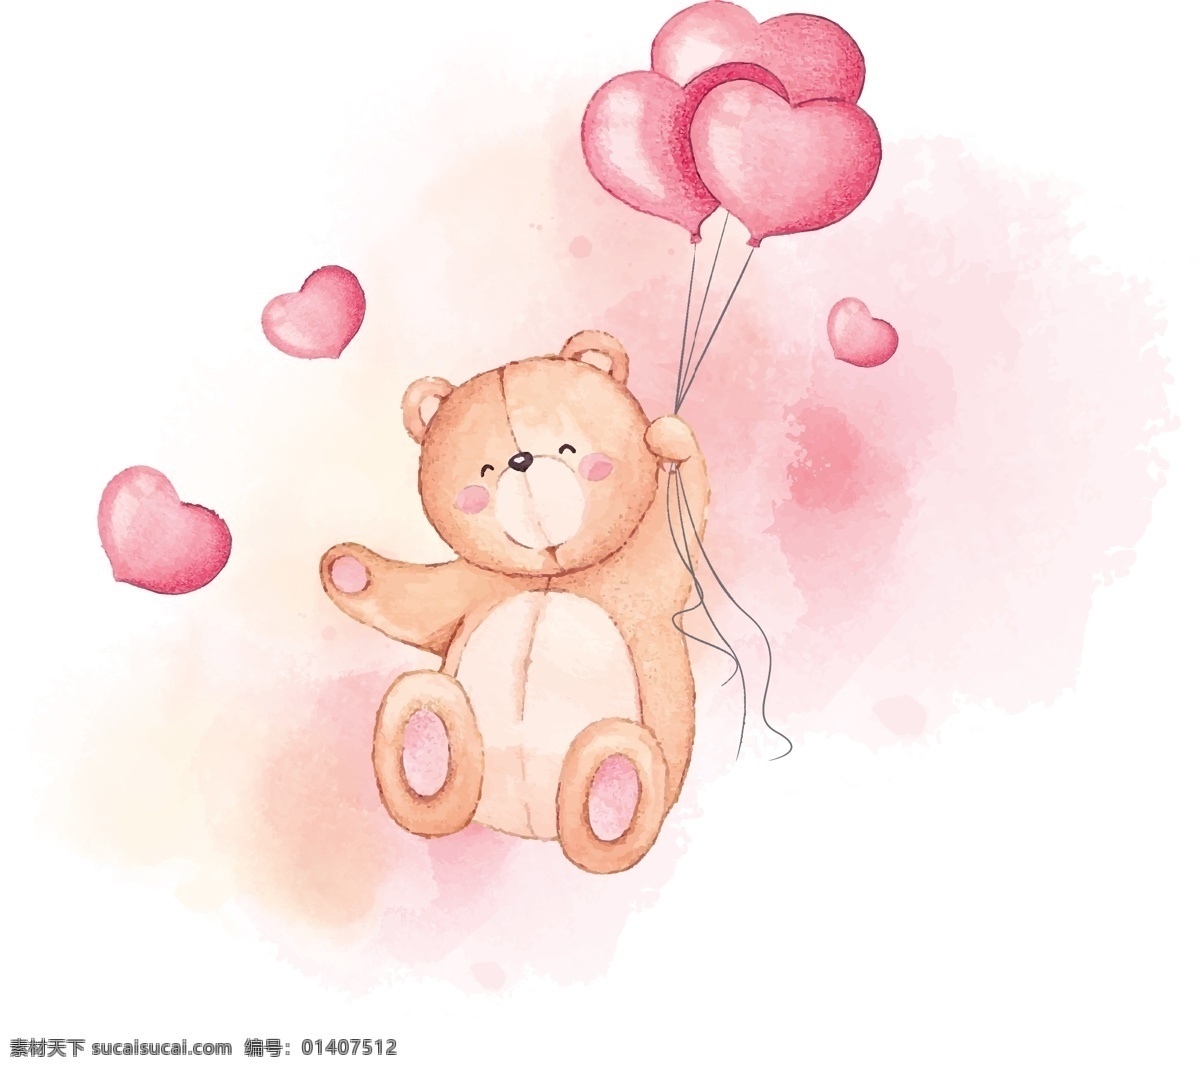 可爱爱心小熊 可爱 爱心 小熊 心型气球 气球 少女心 童心 绘画 插画